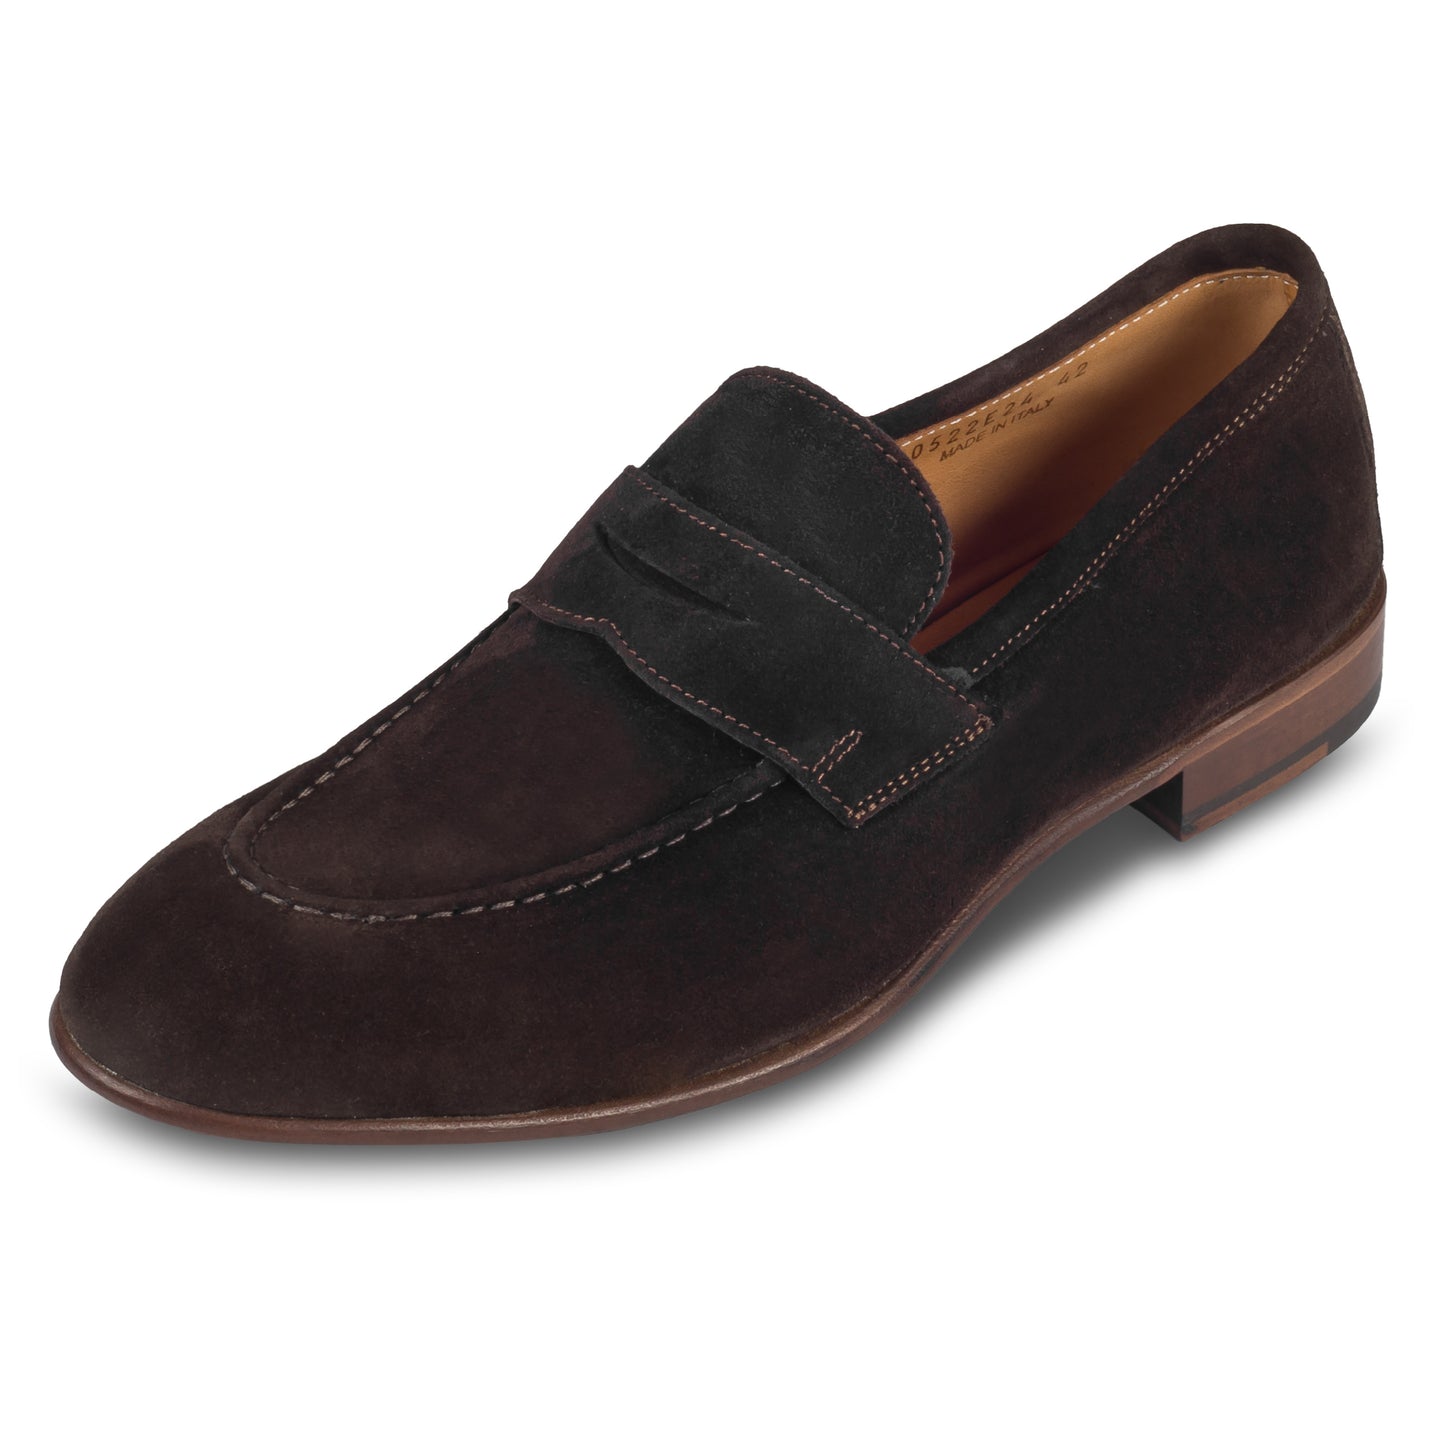 Brecos Italienische Herren-Loafer aus Veloursleder in dunkelbraun. Mit Leder-/Gummisohle. Durchgenäht und handgefertigt in Italien. Schräge Ansicht linker Schuh.